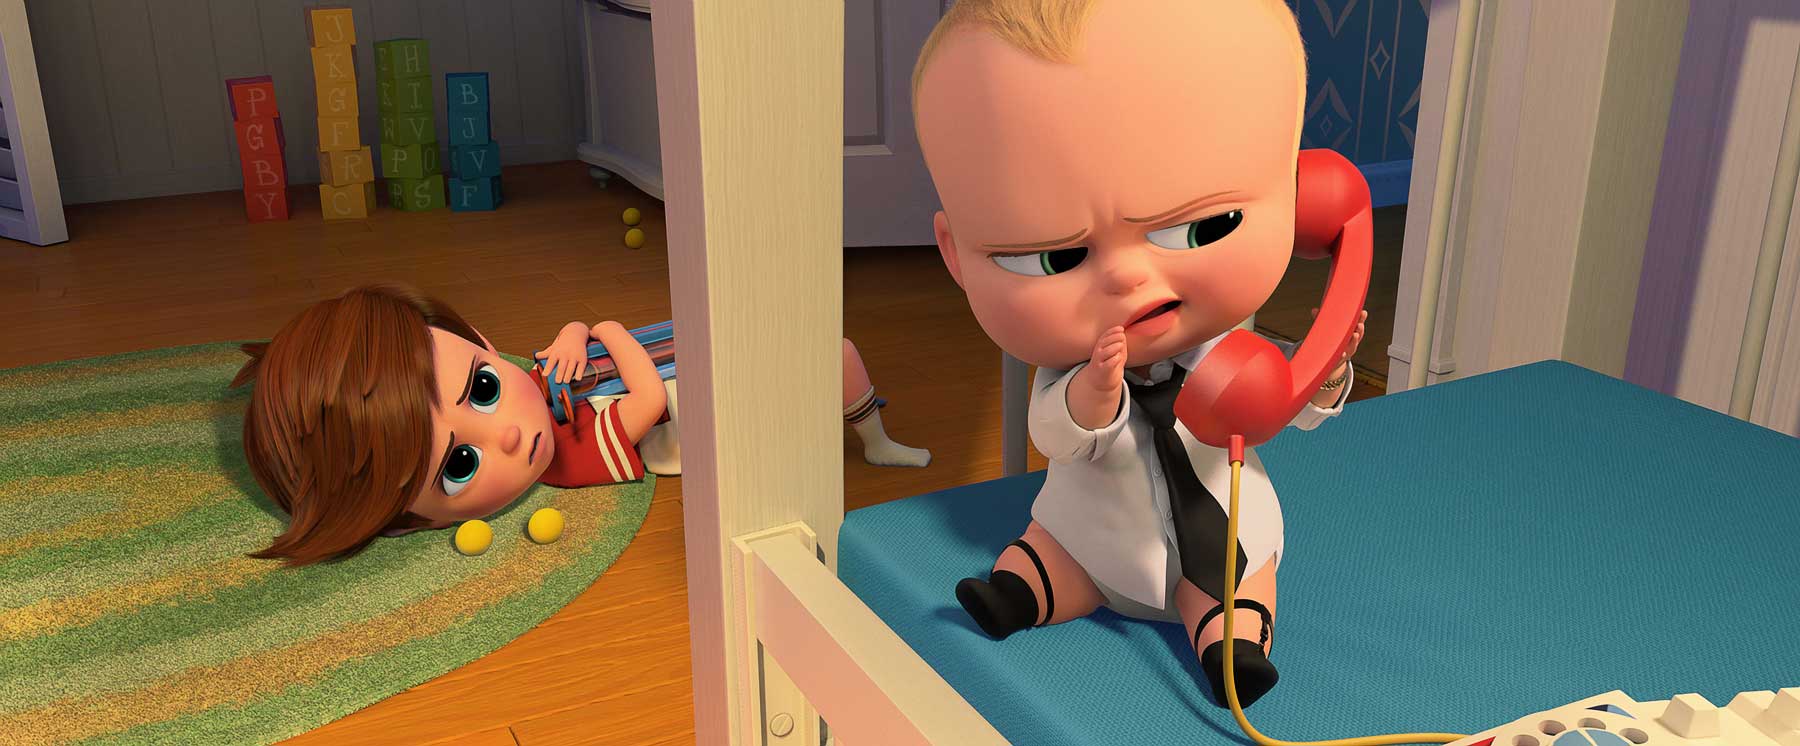 看《波士 BB》（The Boss Baby）的預告片，你會覺得這部 DreamWorks 動畫只是來搞笑的，總之輕輕鬆鬆個半鐘就是了。不過看過之後，又覺得幾溫馨。現在美國的動畫都是細路覺得有趣，大人則會領悟到更多，《波士 BB》也不例外。